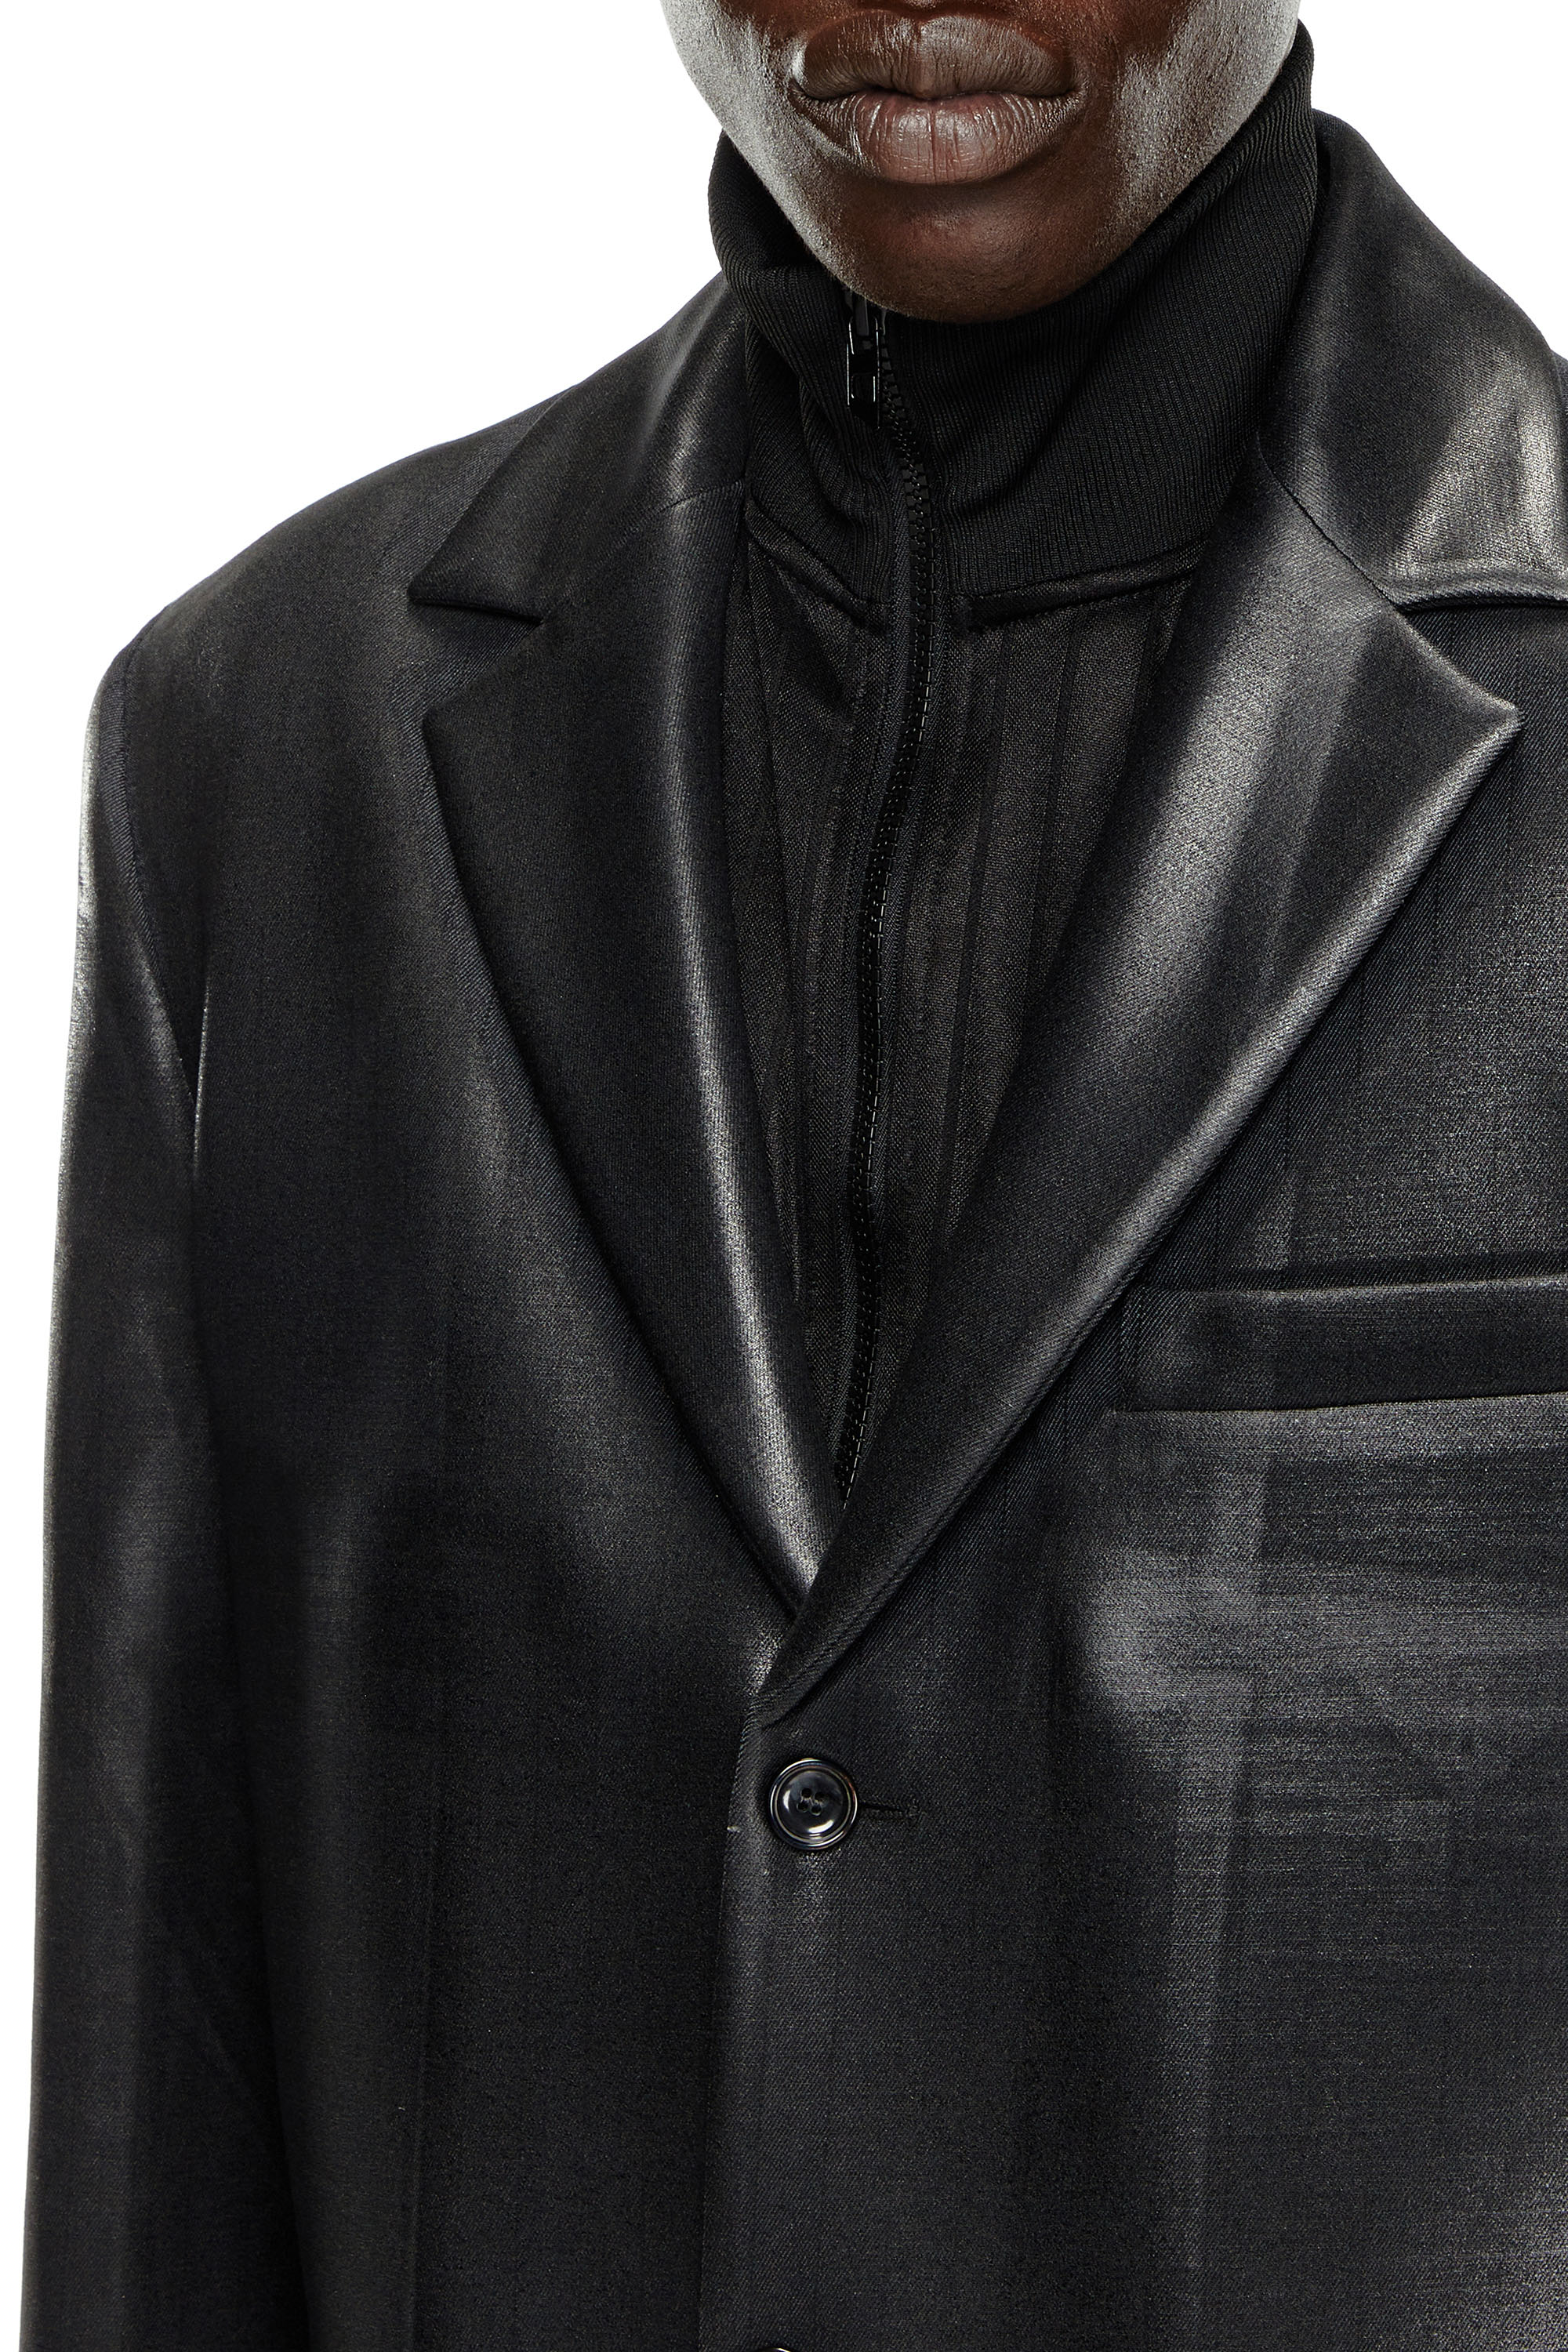 Diesel - J-DENNER, Man Coat in pinstriped cool wool in Black - Image 5